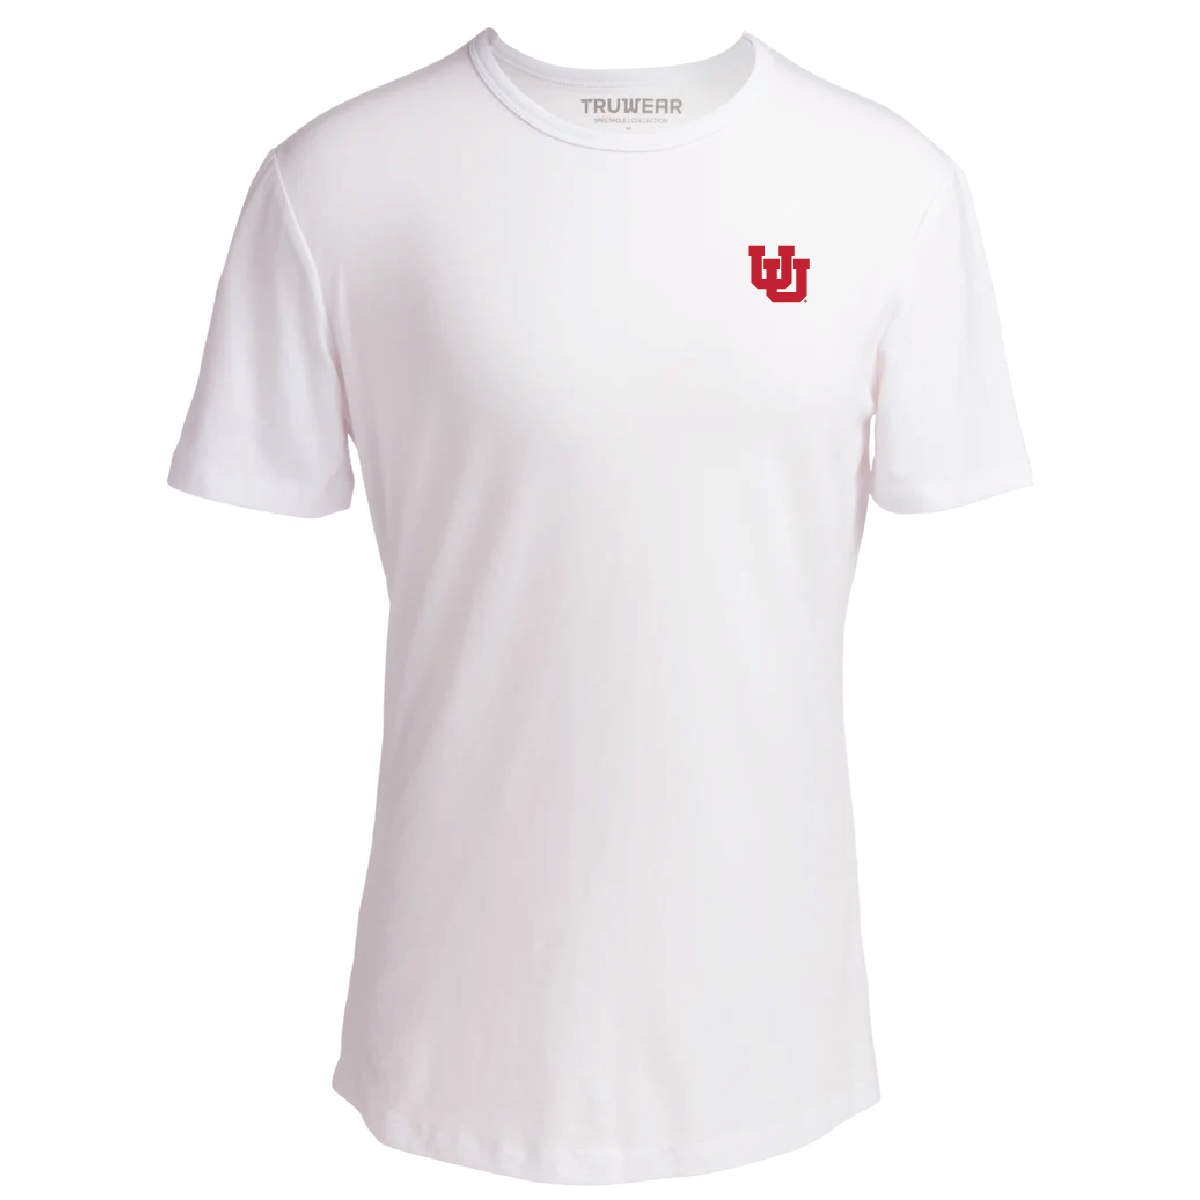 UofU Large Logo Spectacle Tshirt